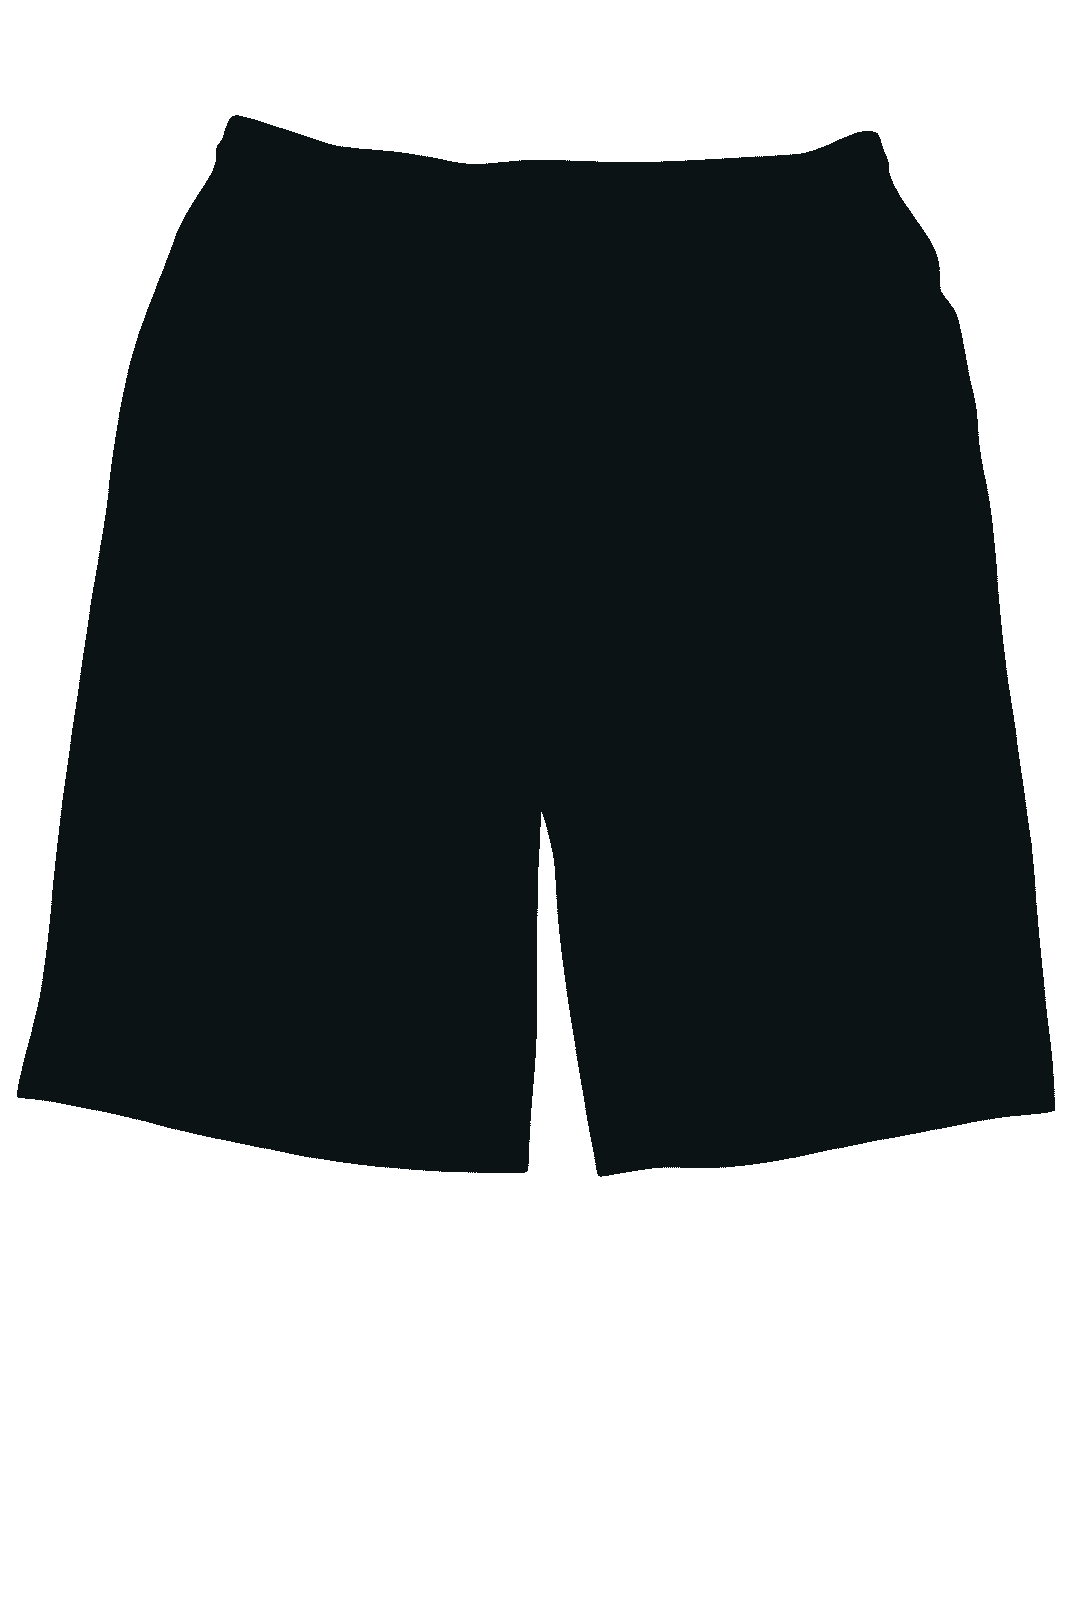 Paragon 600 Aussie Shorts - Black - HIT a Double